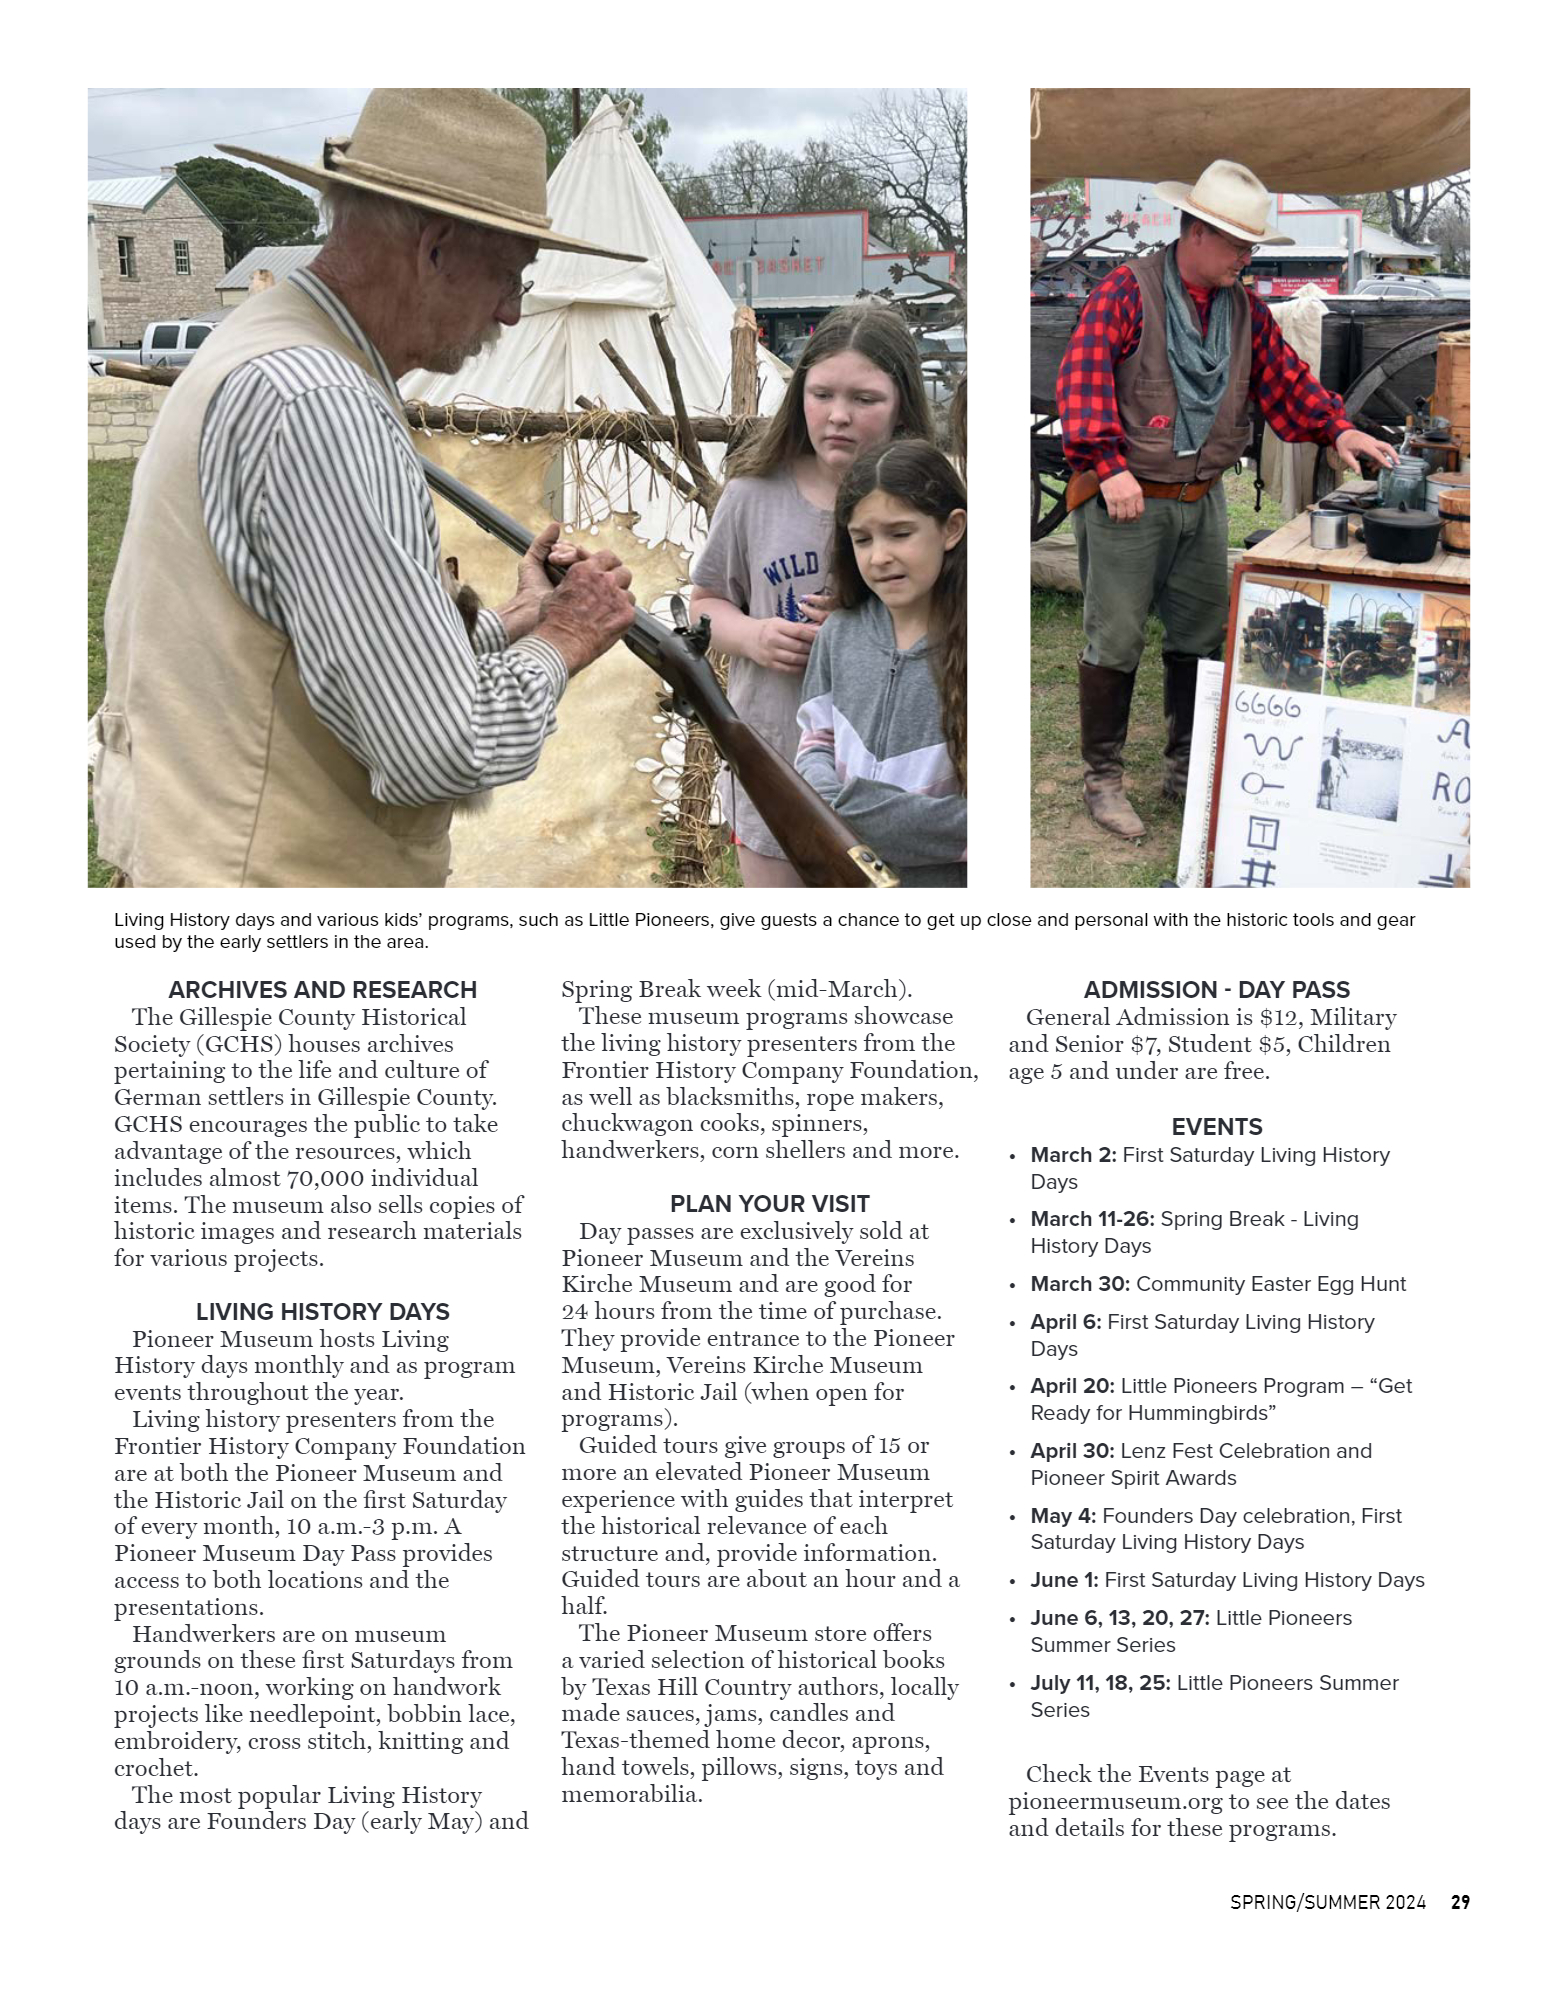 GoFredericksburg Visitors Guide Spring / Summer 20 - page 29